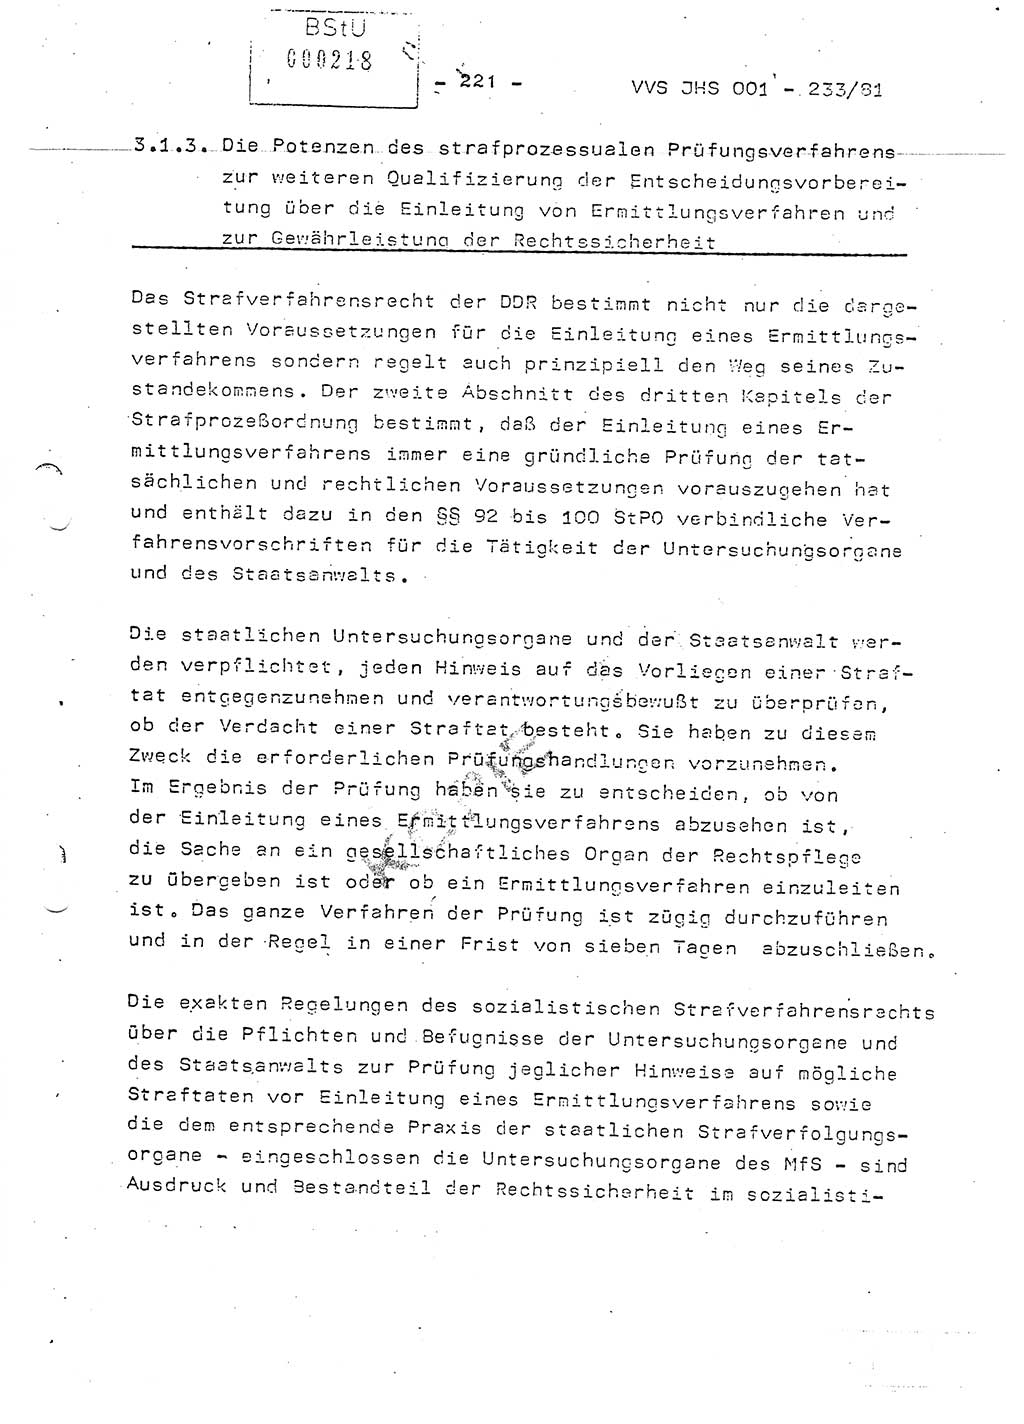 Dissertation Oberstleutnant Horst Zank (JHS), Oberstleutnant Dr. Karl-Heinz Knoblauch (JHS), Oberstleutnant Gustav-Adolf Kowalewski (HA Ⅸ), Oberstleutnant Wolfgang Plötner (HA Ⅸ), Ministerium für Staatssicherheit (MfS) [Deutsche Demokratische Republik (DDR)], Juristische Hochschule (JHS), Vertrauliche Verschlußsache (VVS) o001-233/81, Potsdam 1981, Blatt 221 (Diss. MfS DDR JHS VVS o001-233/81 1981, Bl. 221)